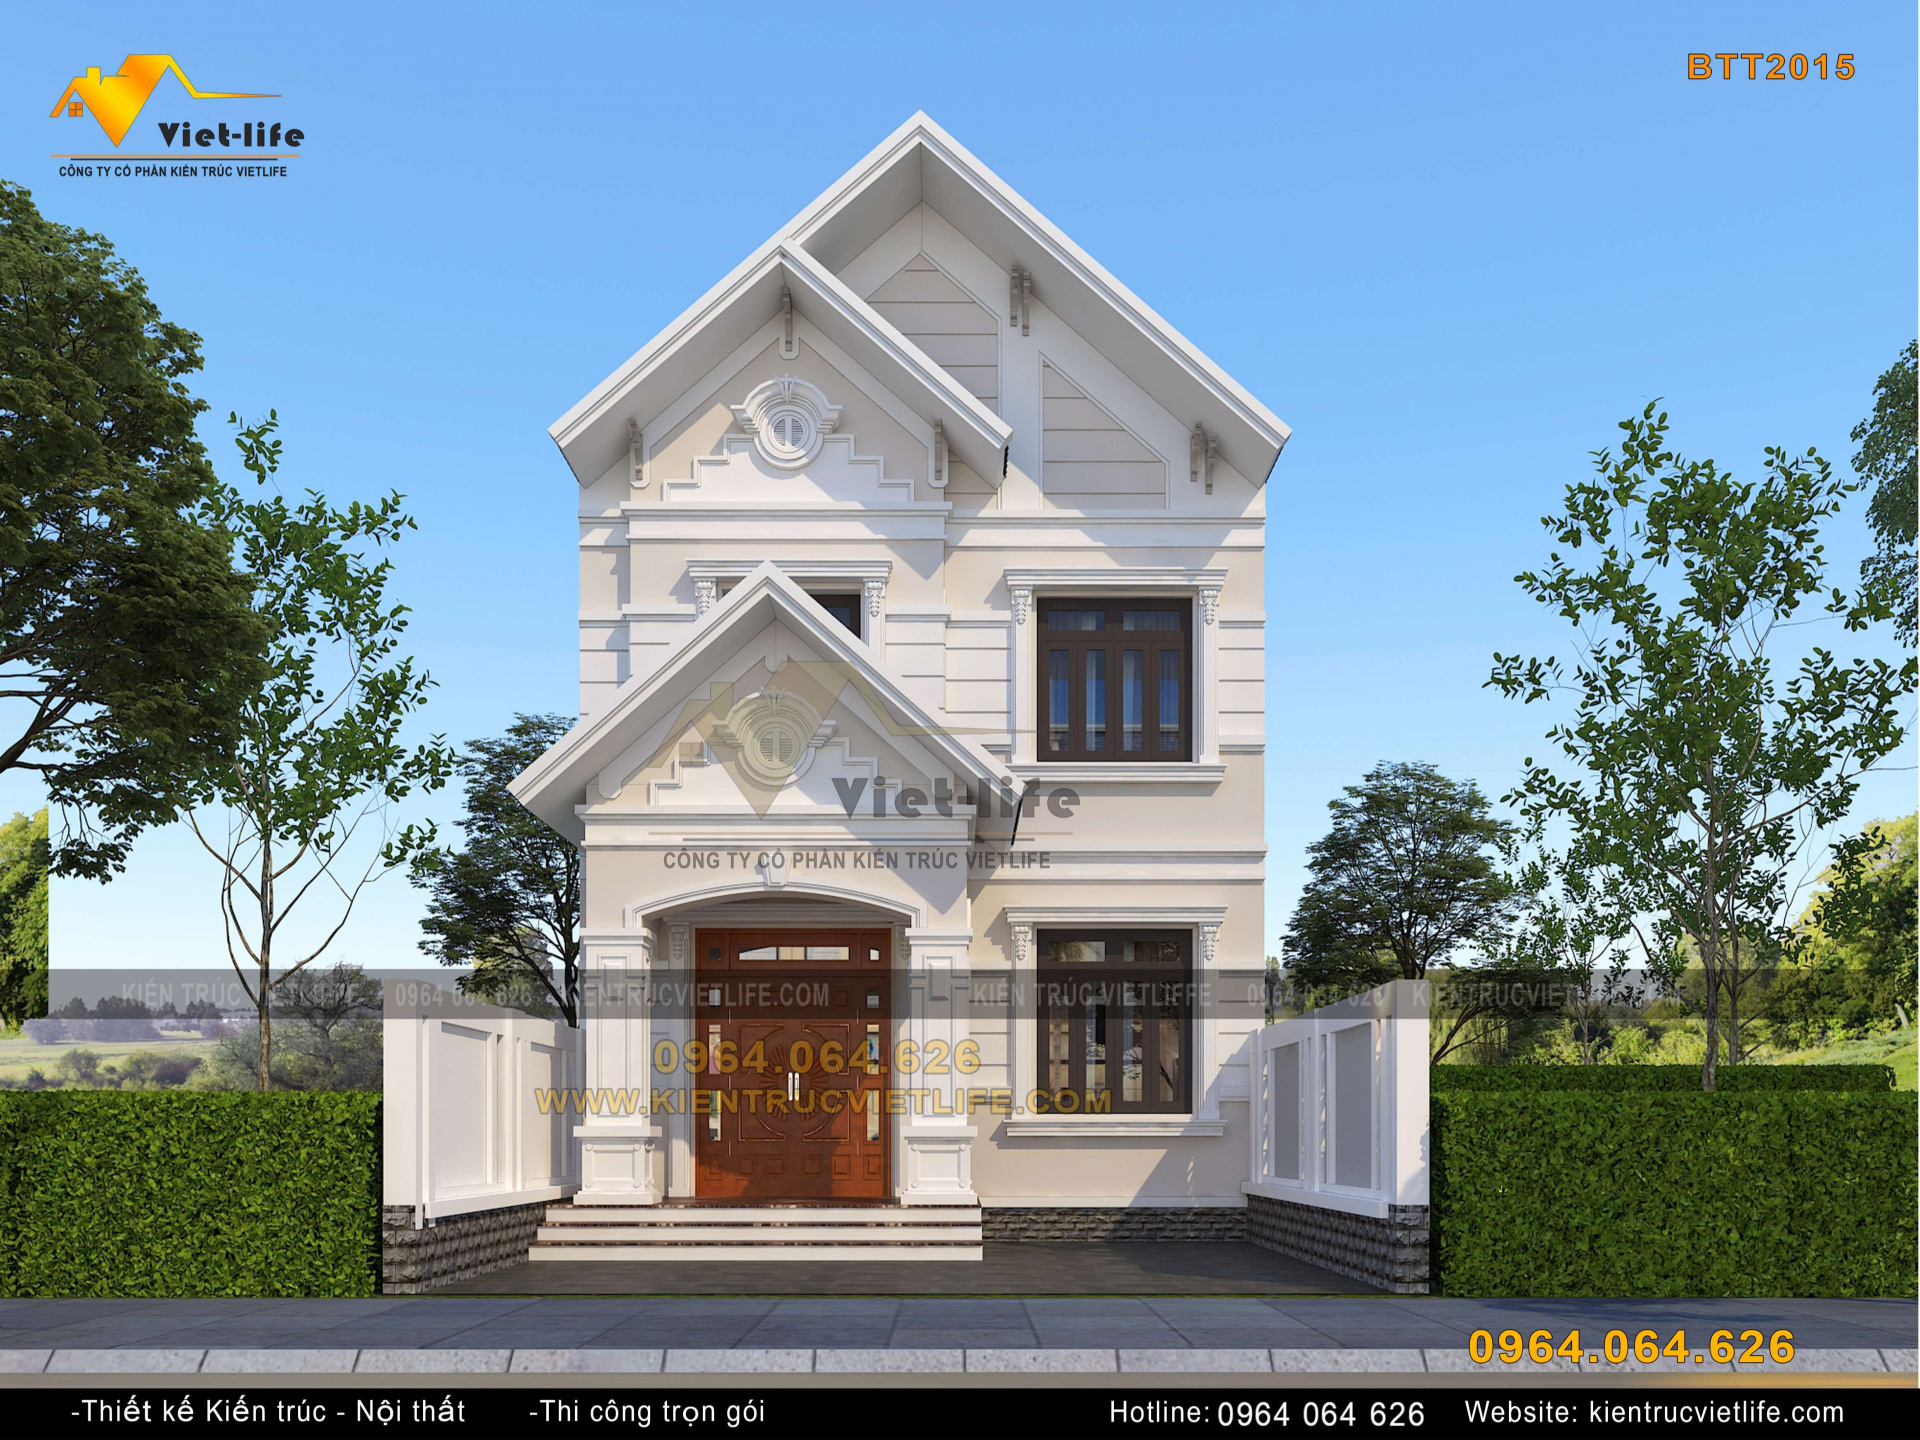 Thiết kế nhà ống mái thái 2 tầng 6x12m tại Sơn La NDNP2T24 - Thiết kế Thi  công Nhà đẹp | Home fashion, Kiến trúc, Thiết kế nhà